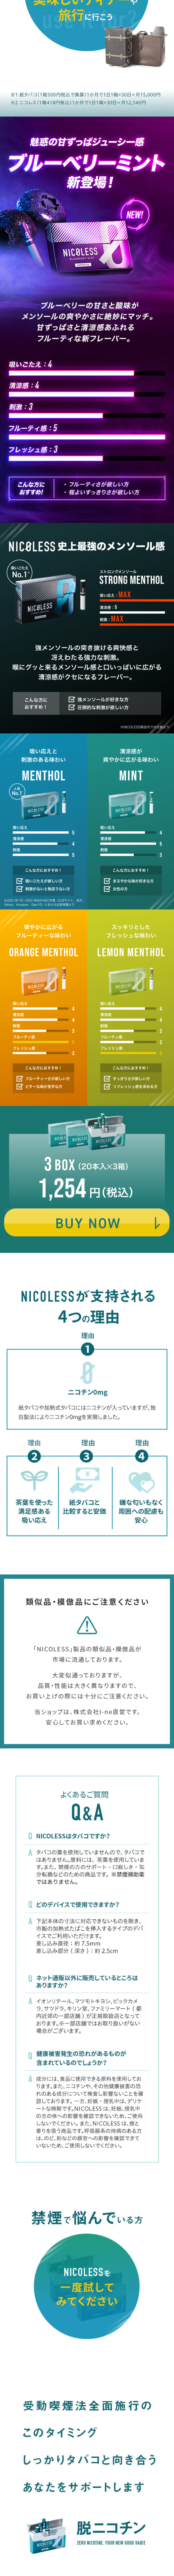 NICOLESS_sp_2